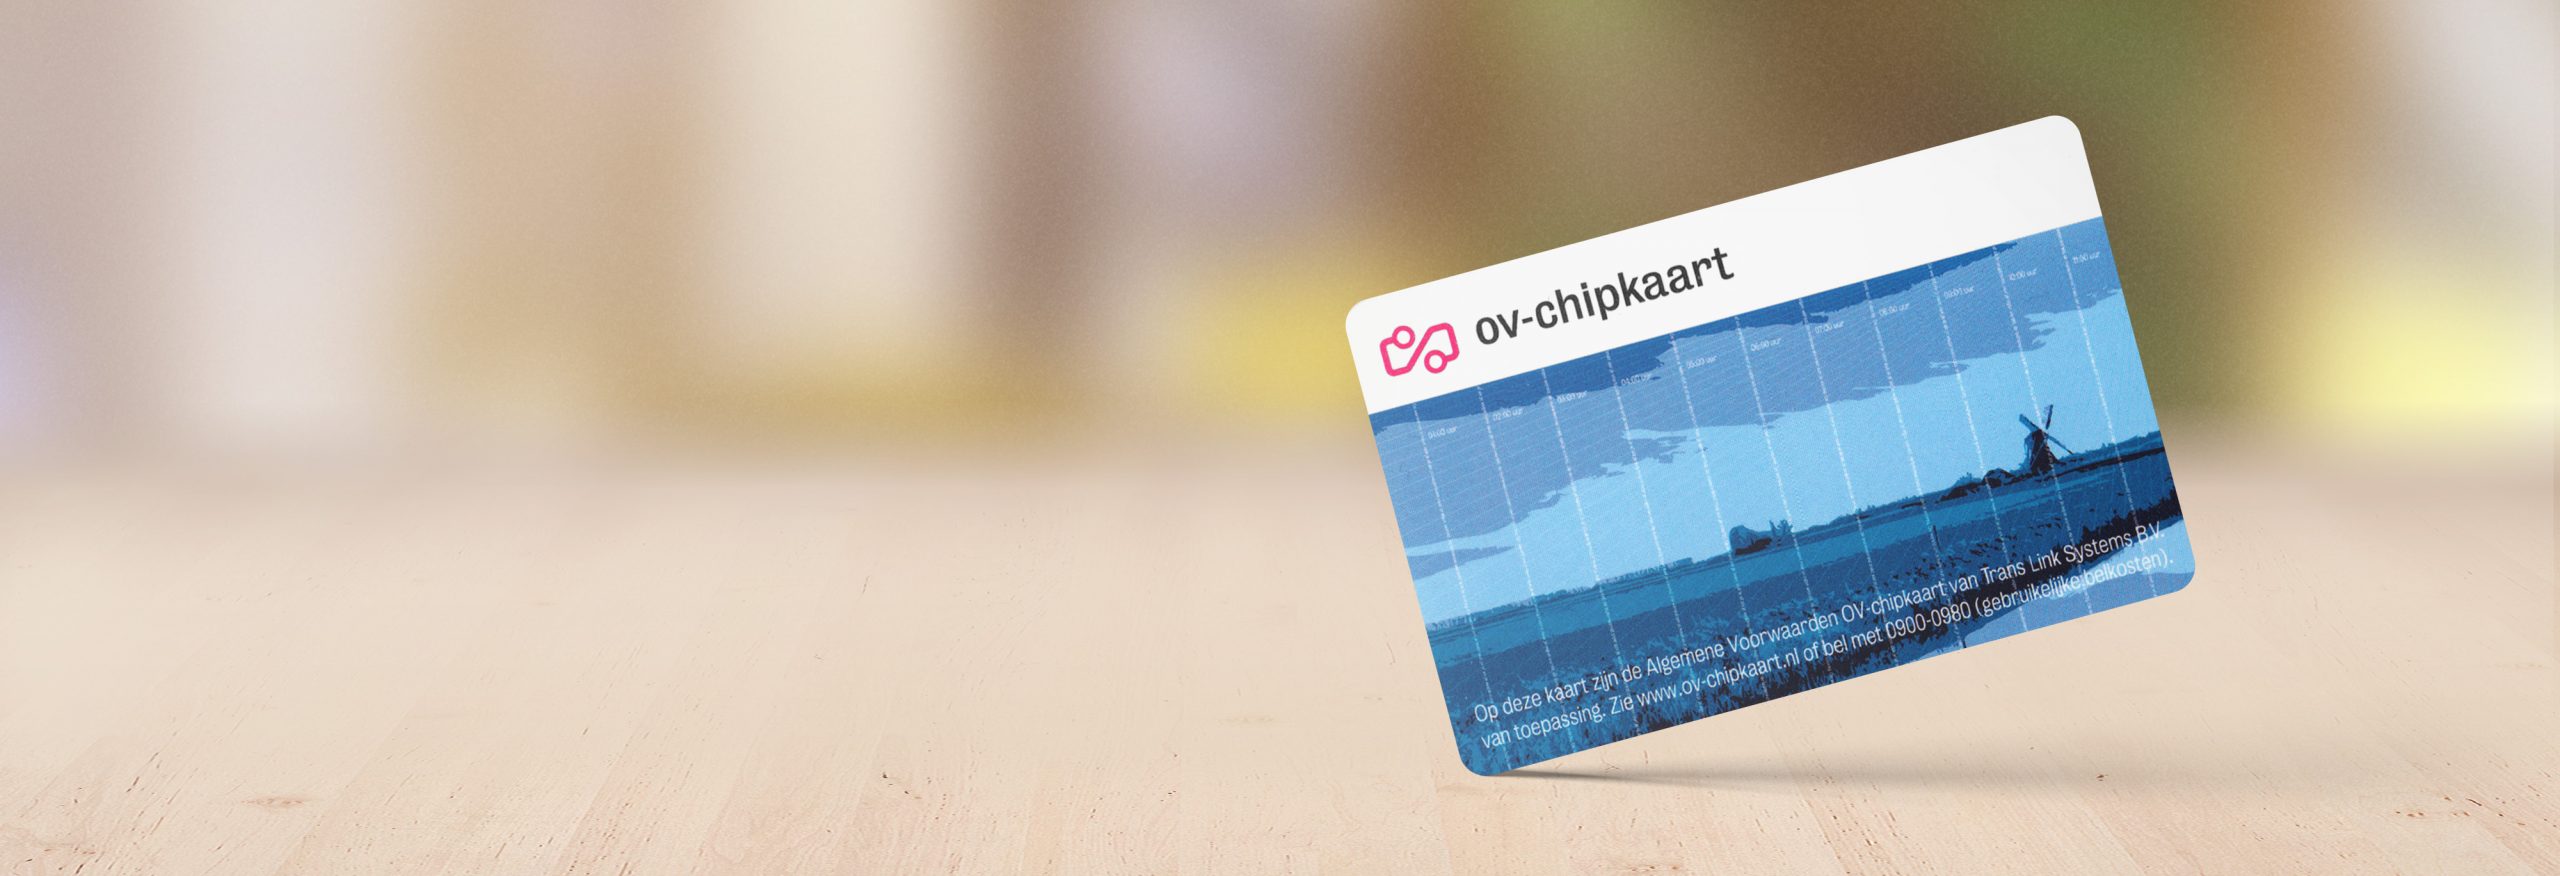 OV-chipkaart mockup